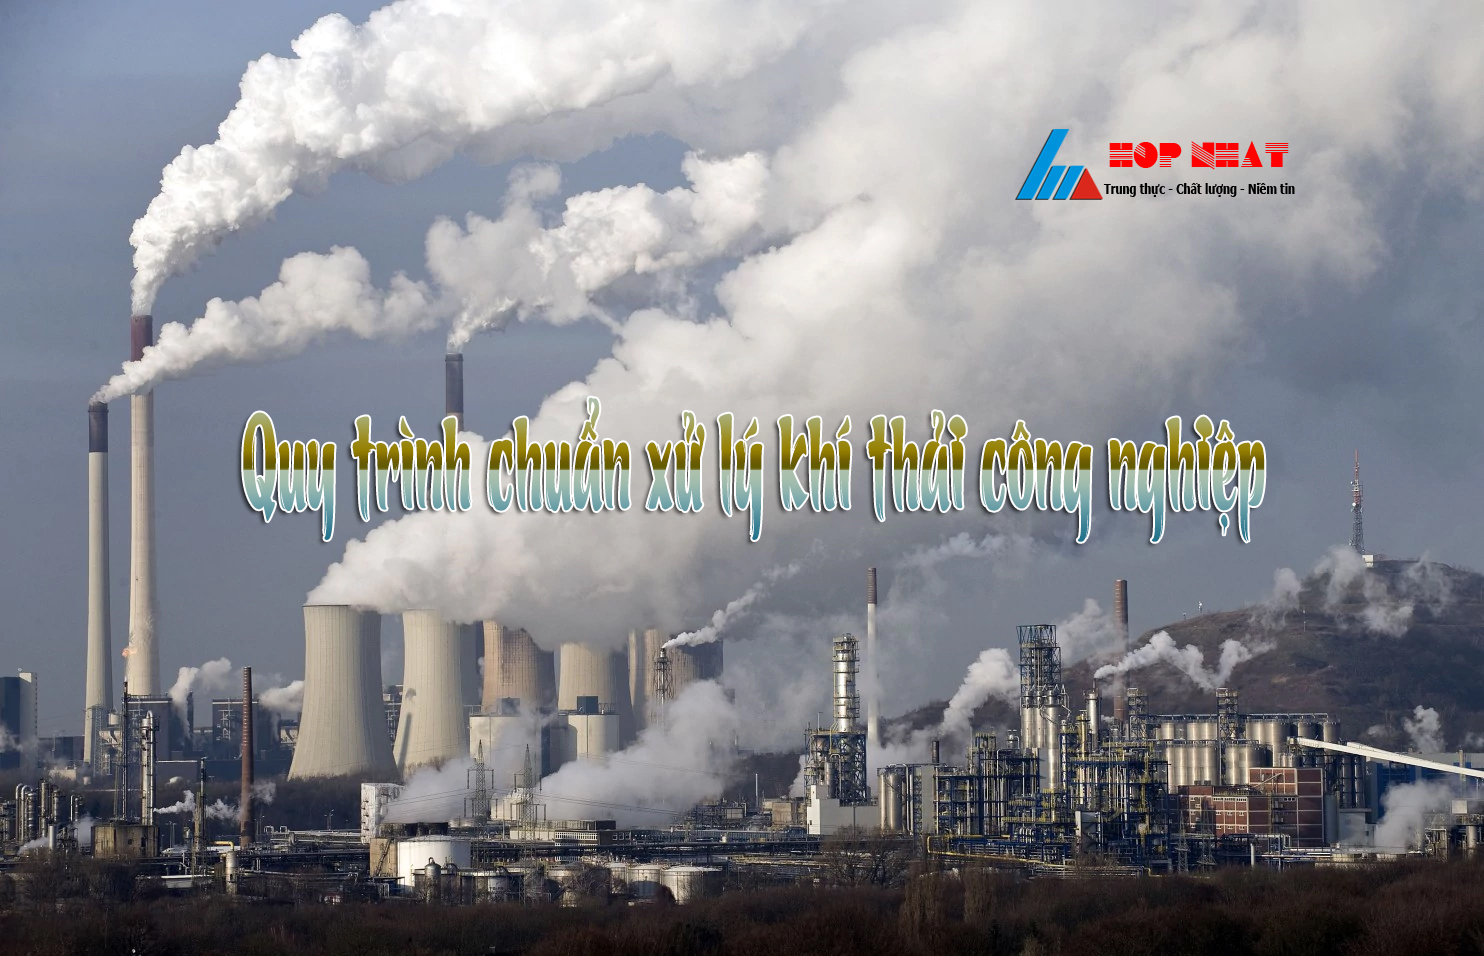 Quy trình xử lý khí thải công nghiệp